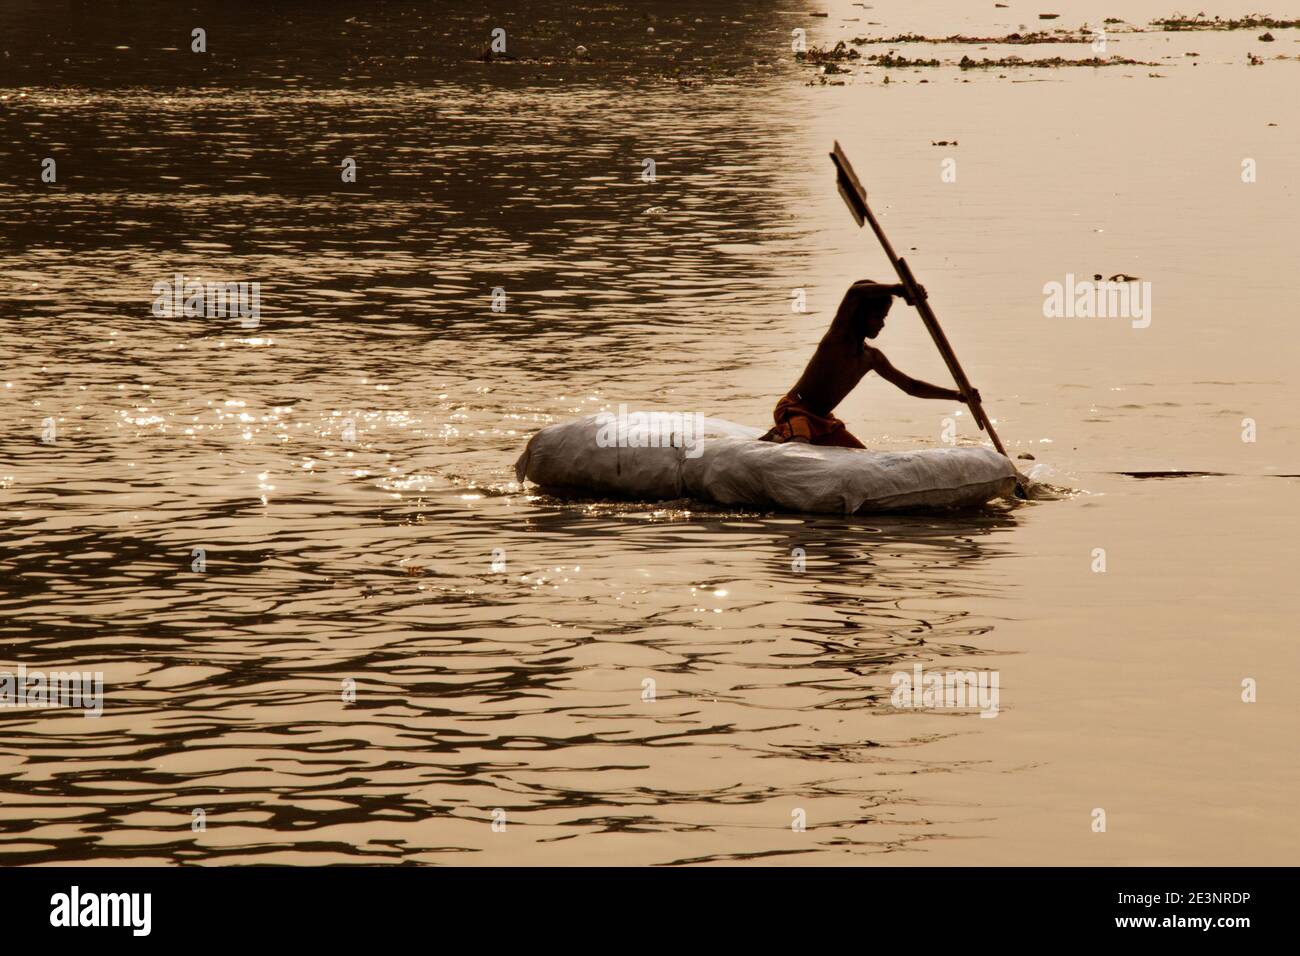 Un niño viaja en balsa por el río Ganges en Kolkata. Viajar en esta balsa es solo una parte de la infancia. Foto de stock